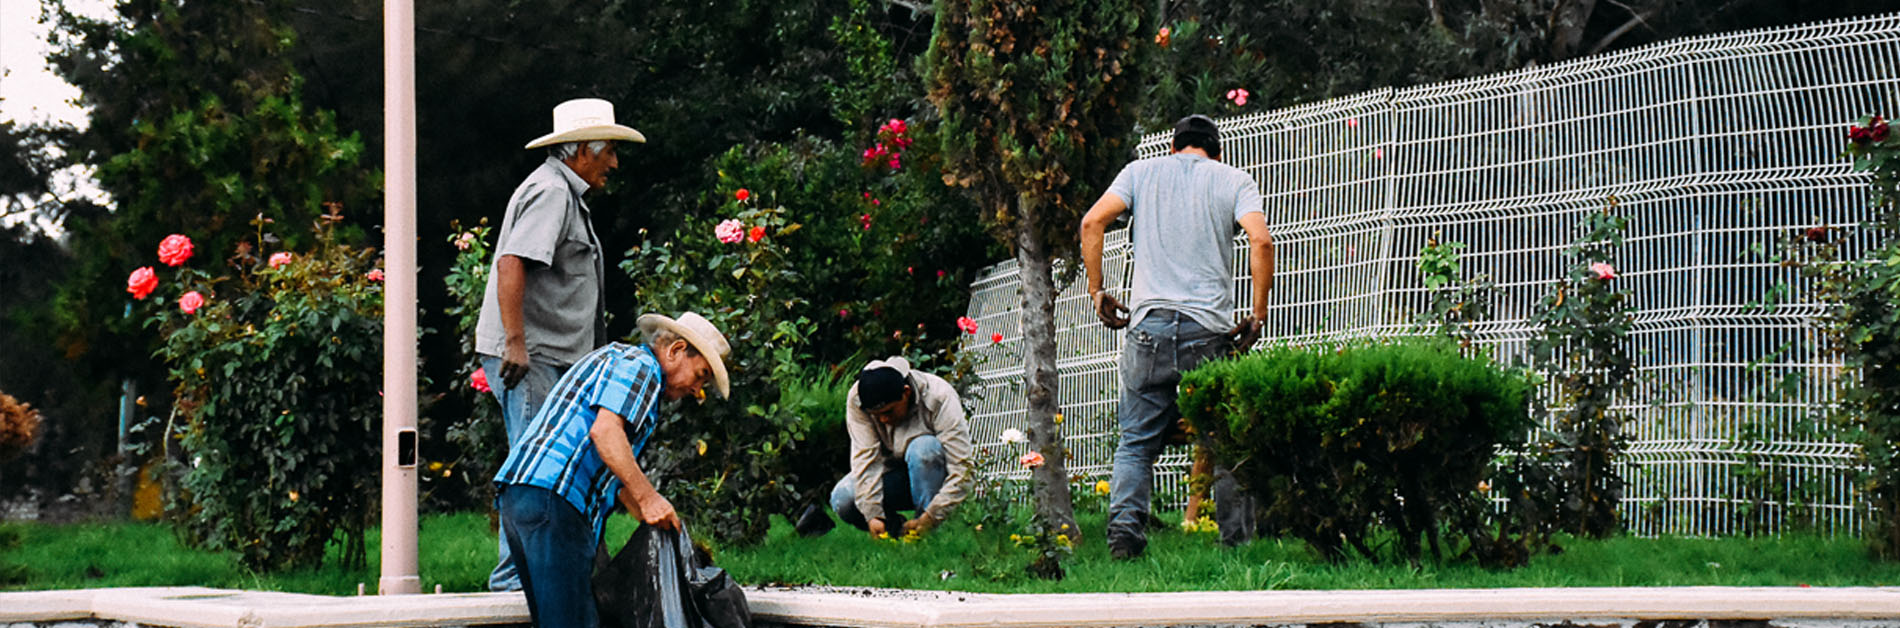 Hombres realizando trabajo de limpieza en una jardinera